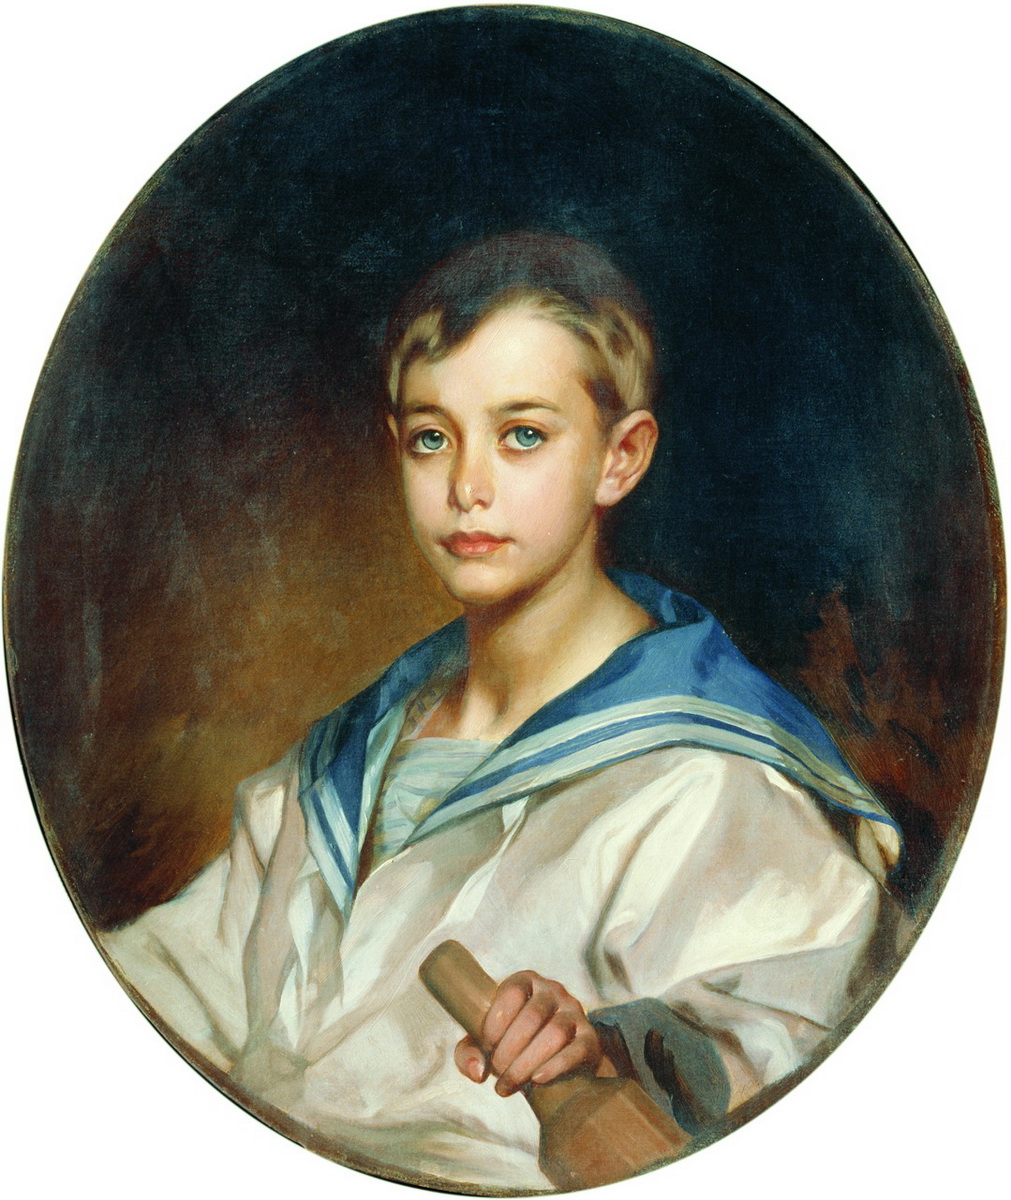 Макаров. Портрет графа Б.С. Шереметева в детстве. 1880-е